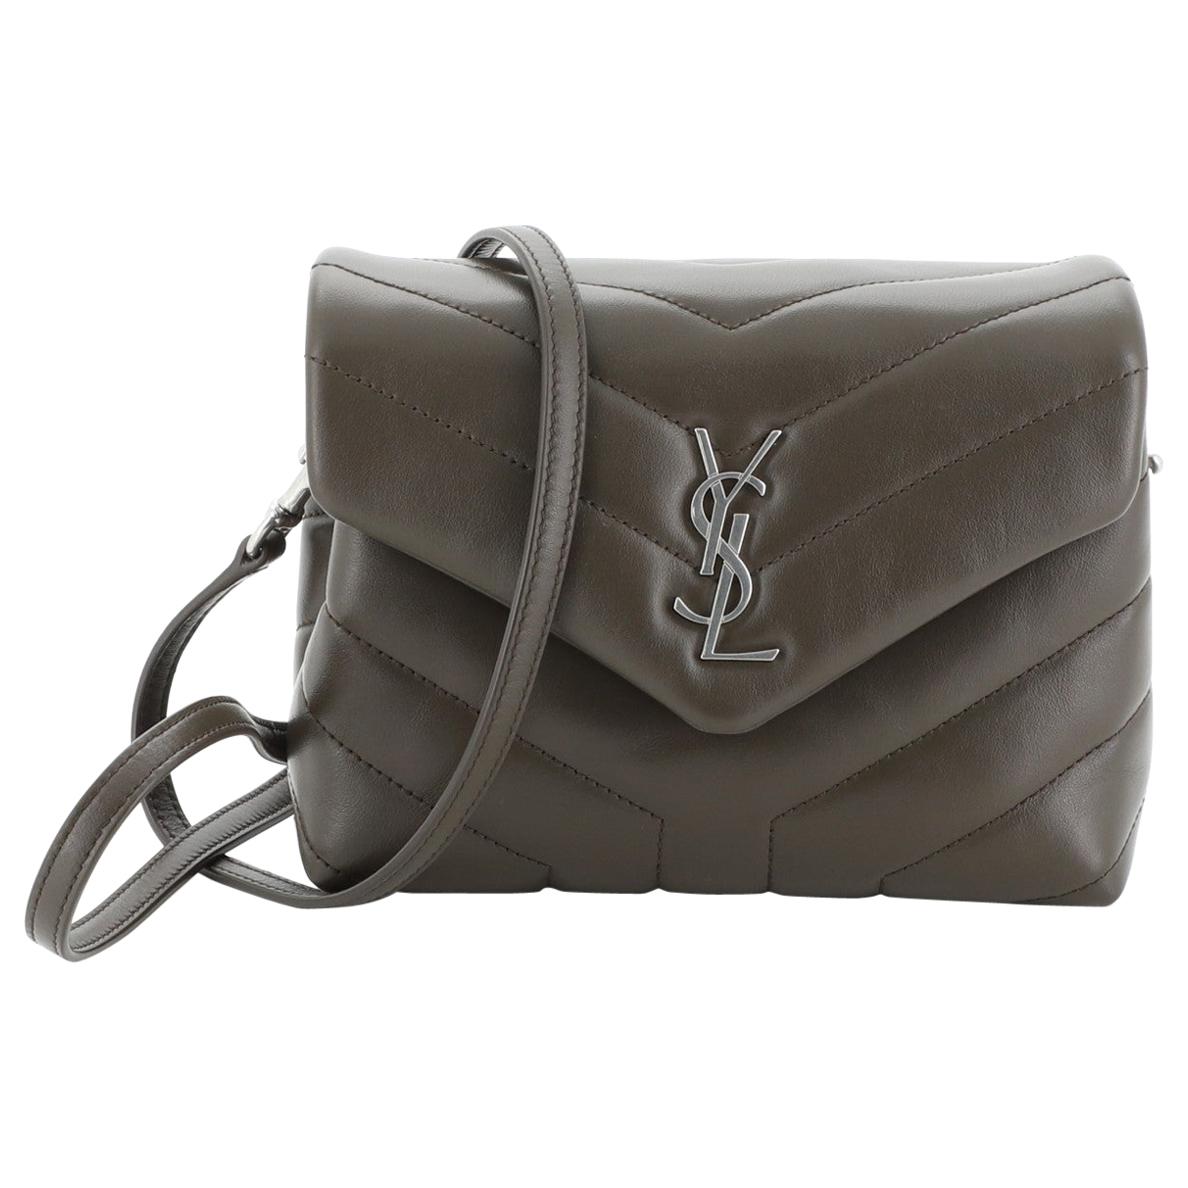 Saint Laurent Women's Loulou Matelassé Leather Shoulder Bag